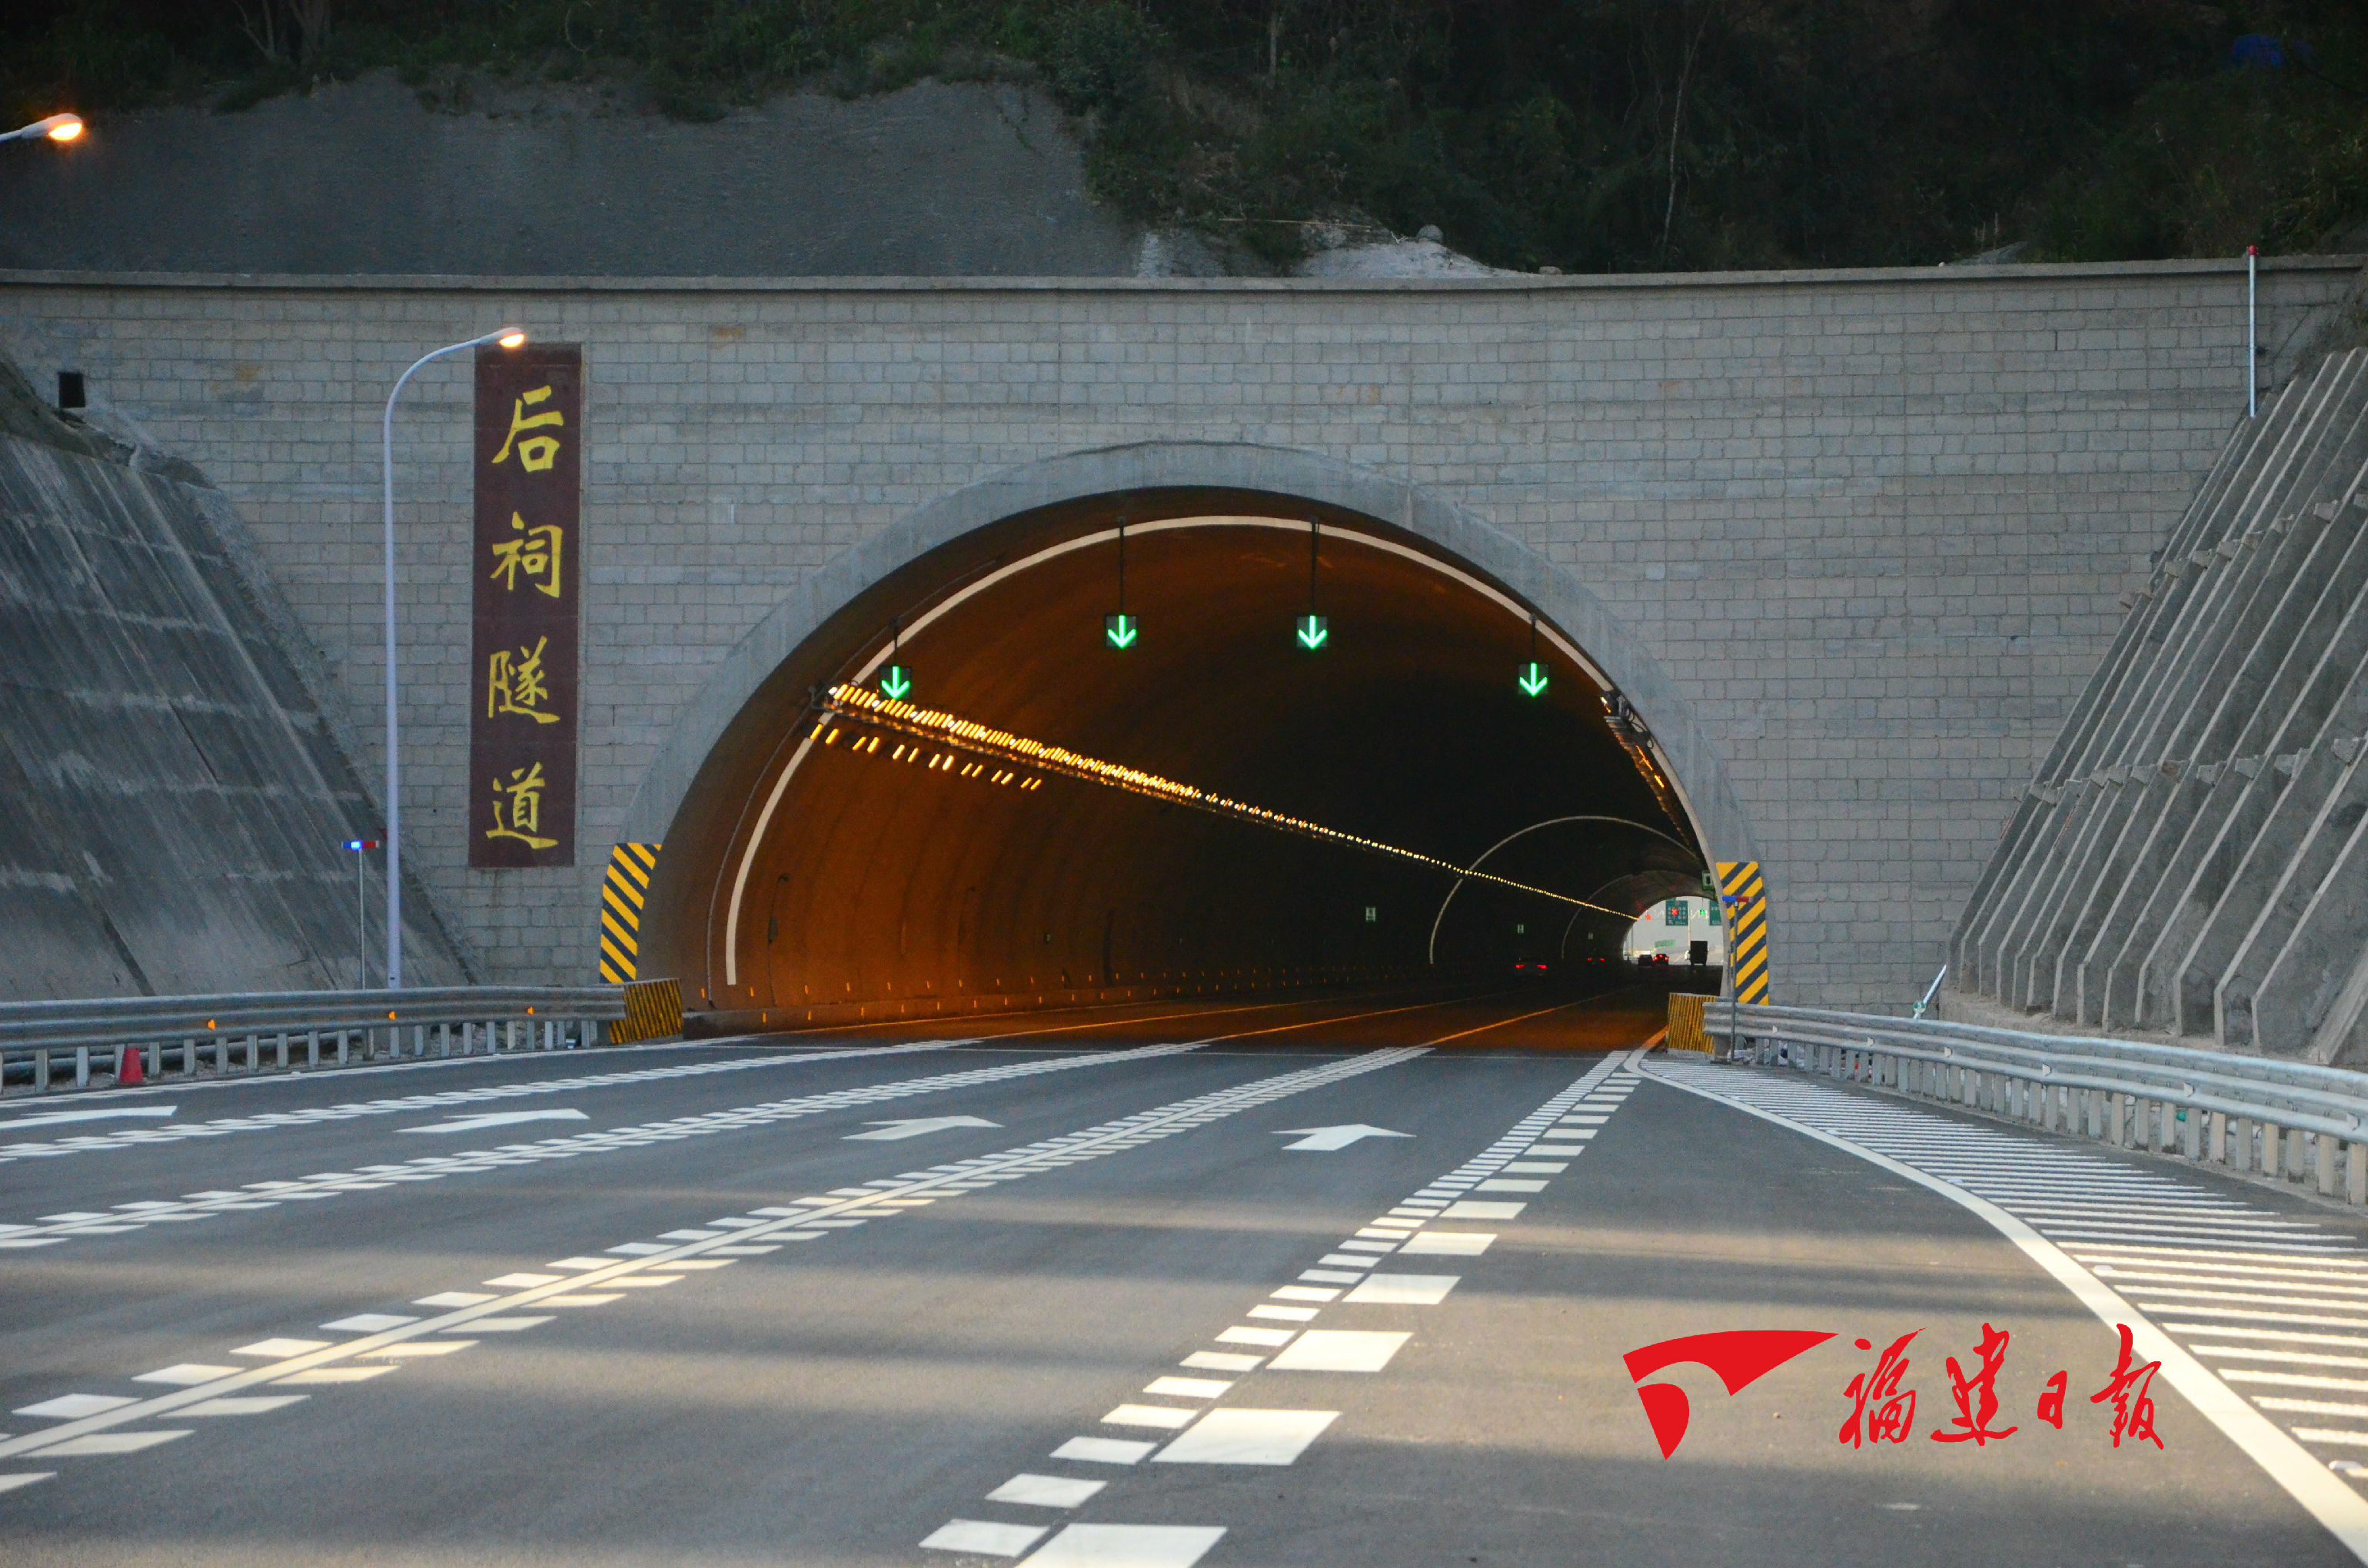 [高速公路隧道]高速公路隧道景观照明效果改进 - 土木在线